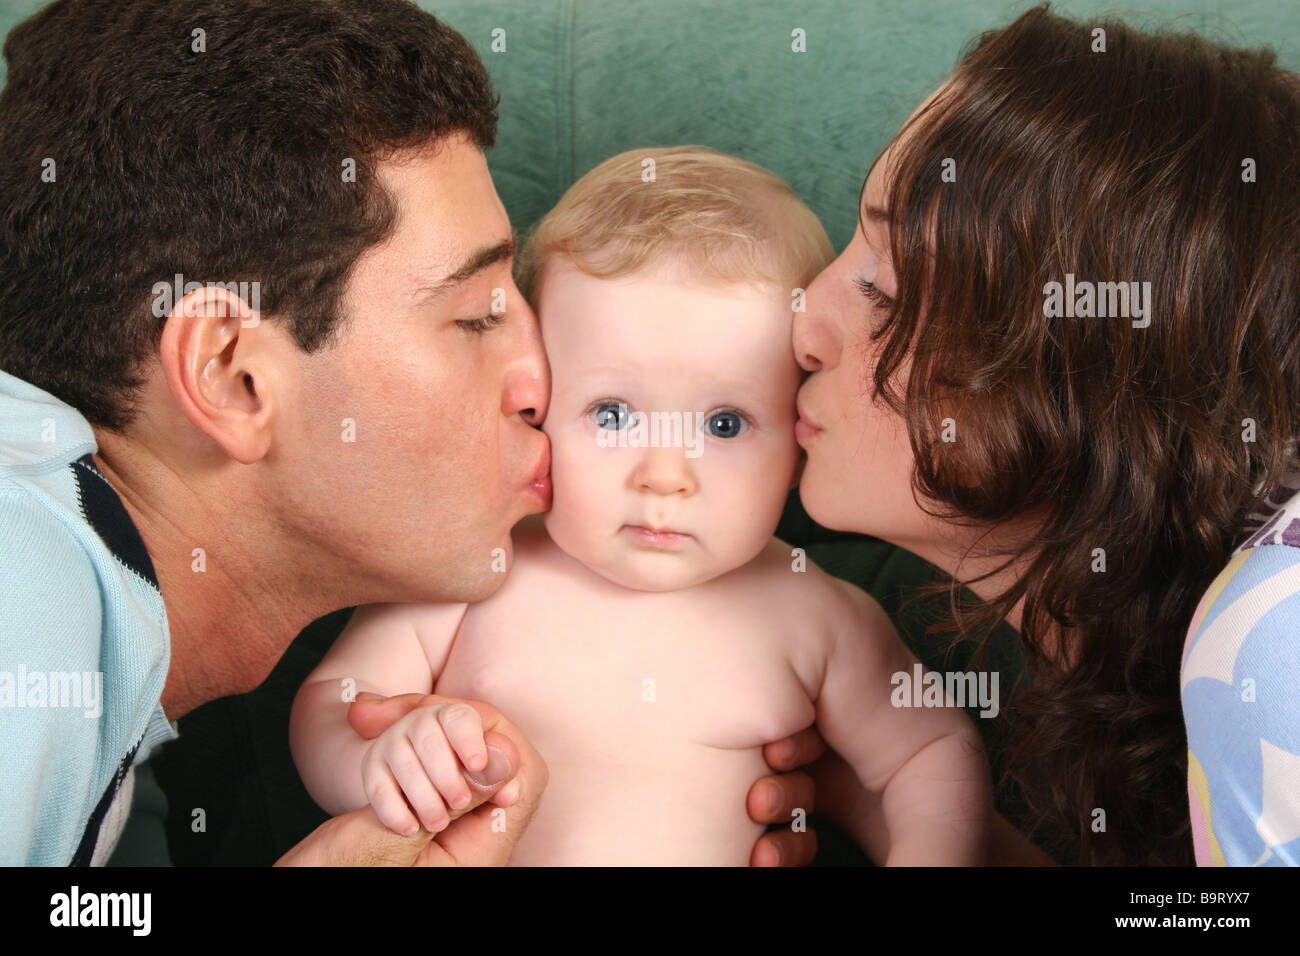 Мама папа поцелуй. Родители целуют ребенка. Мама и папа целуют ребенка. Отец целует ребенка. Фото родителей целующих детей.